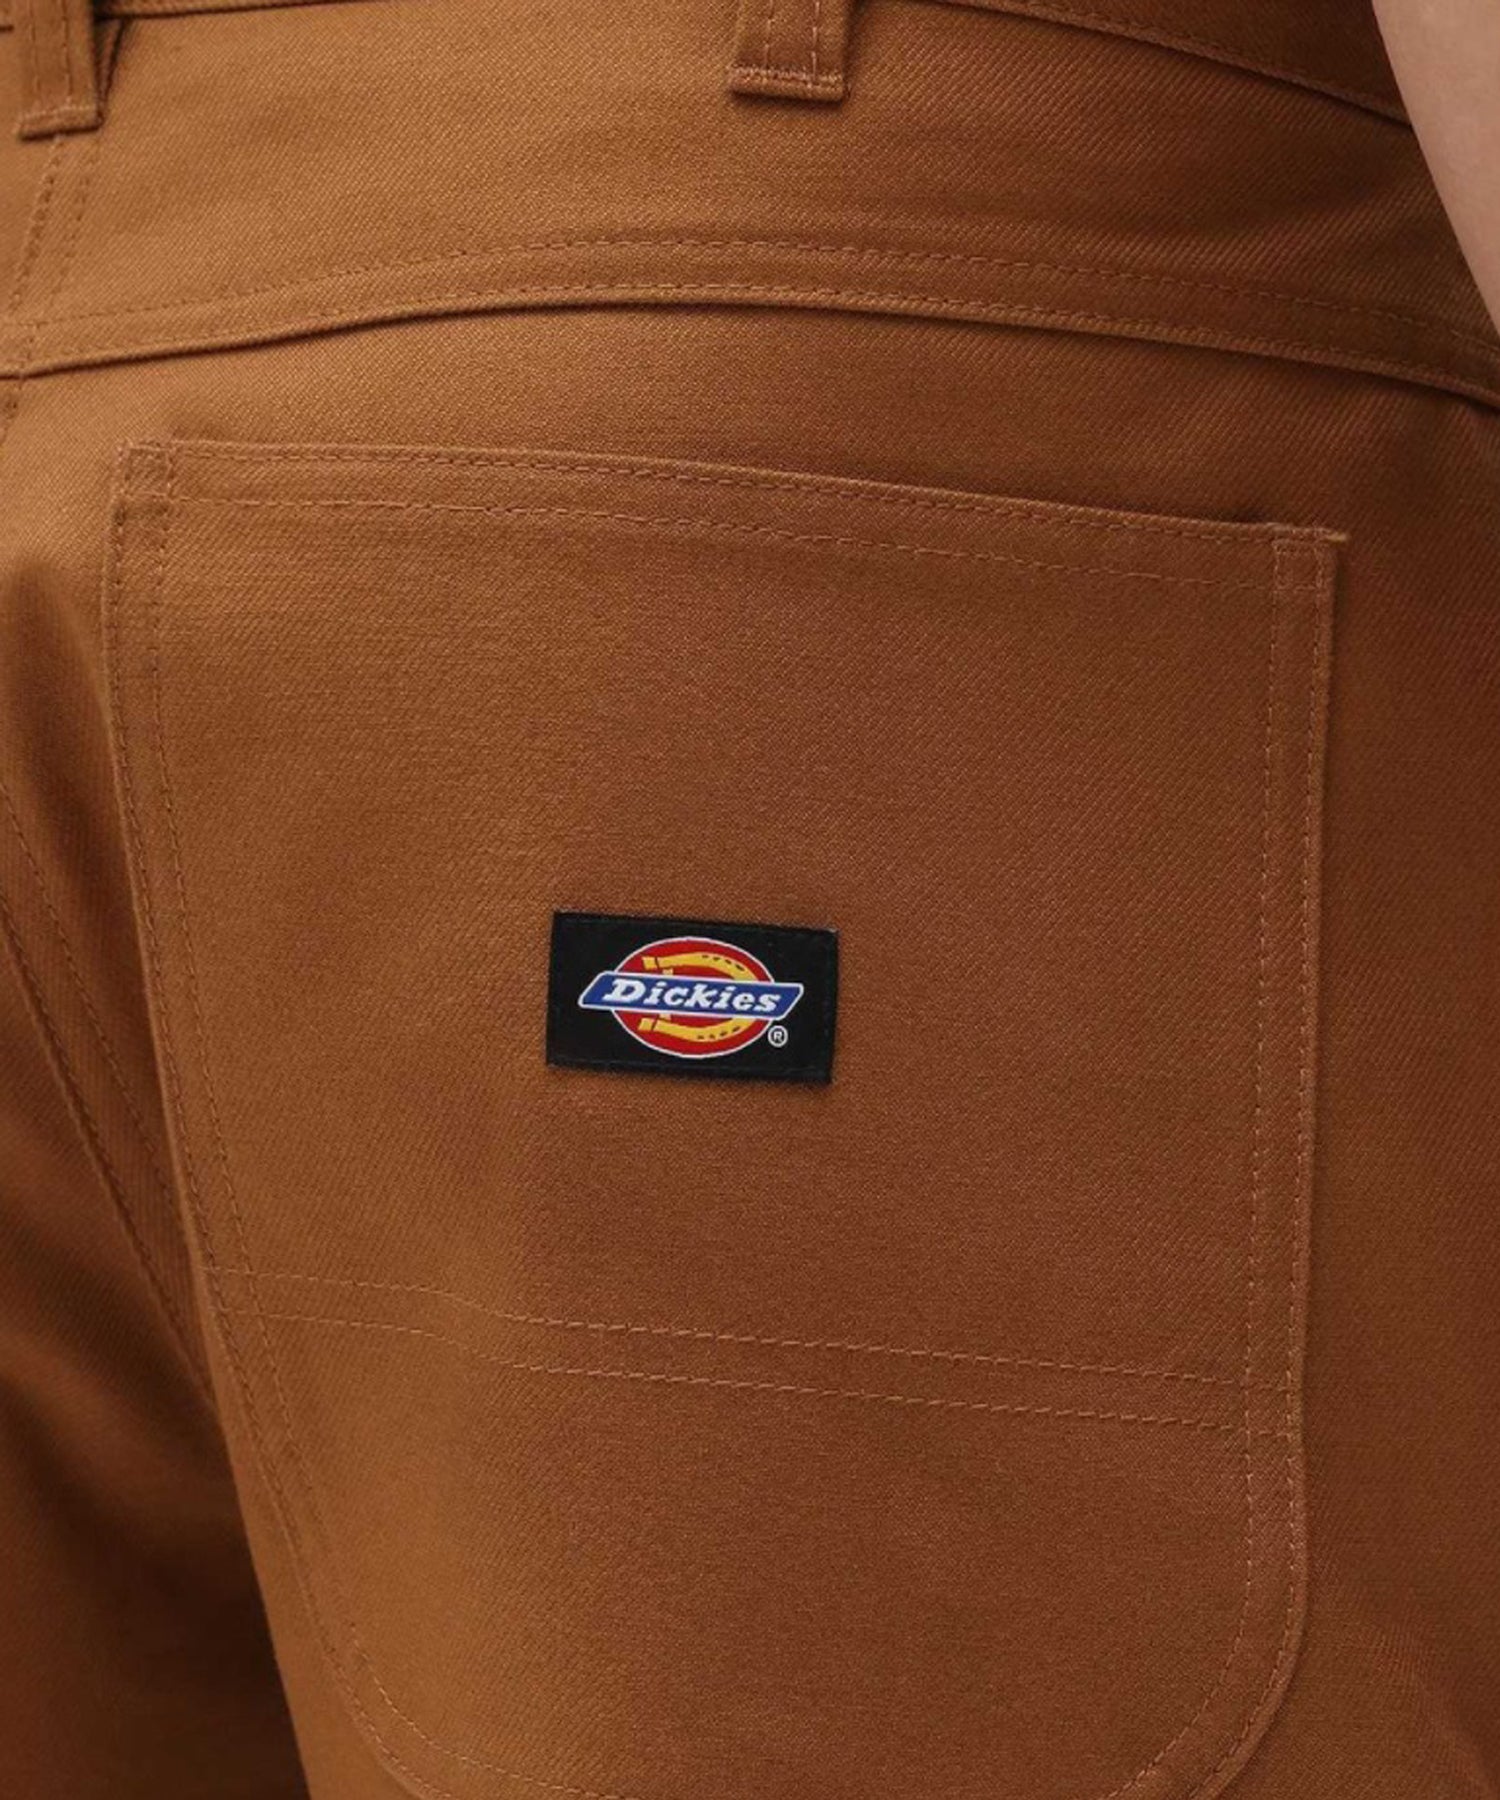 dickies fairdale pantalón corto de color marron -sarga de algodón 100% y corte recto.